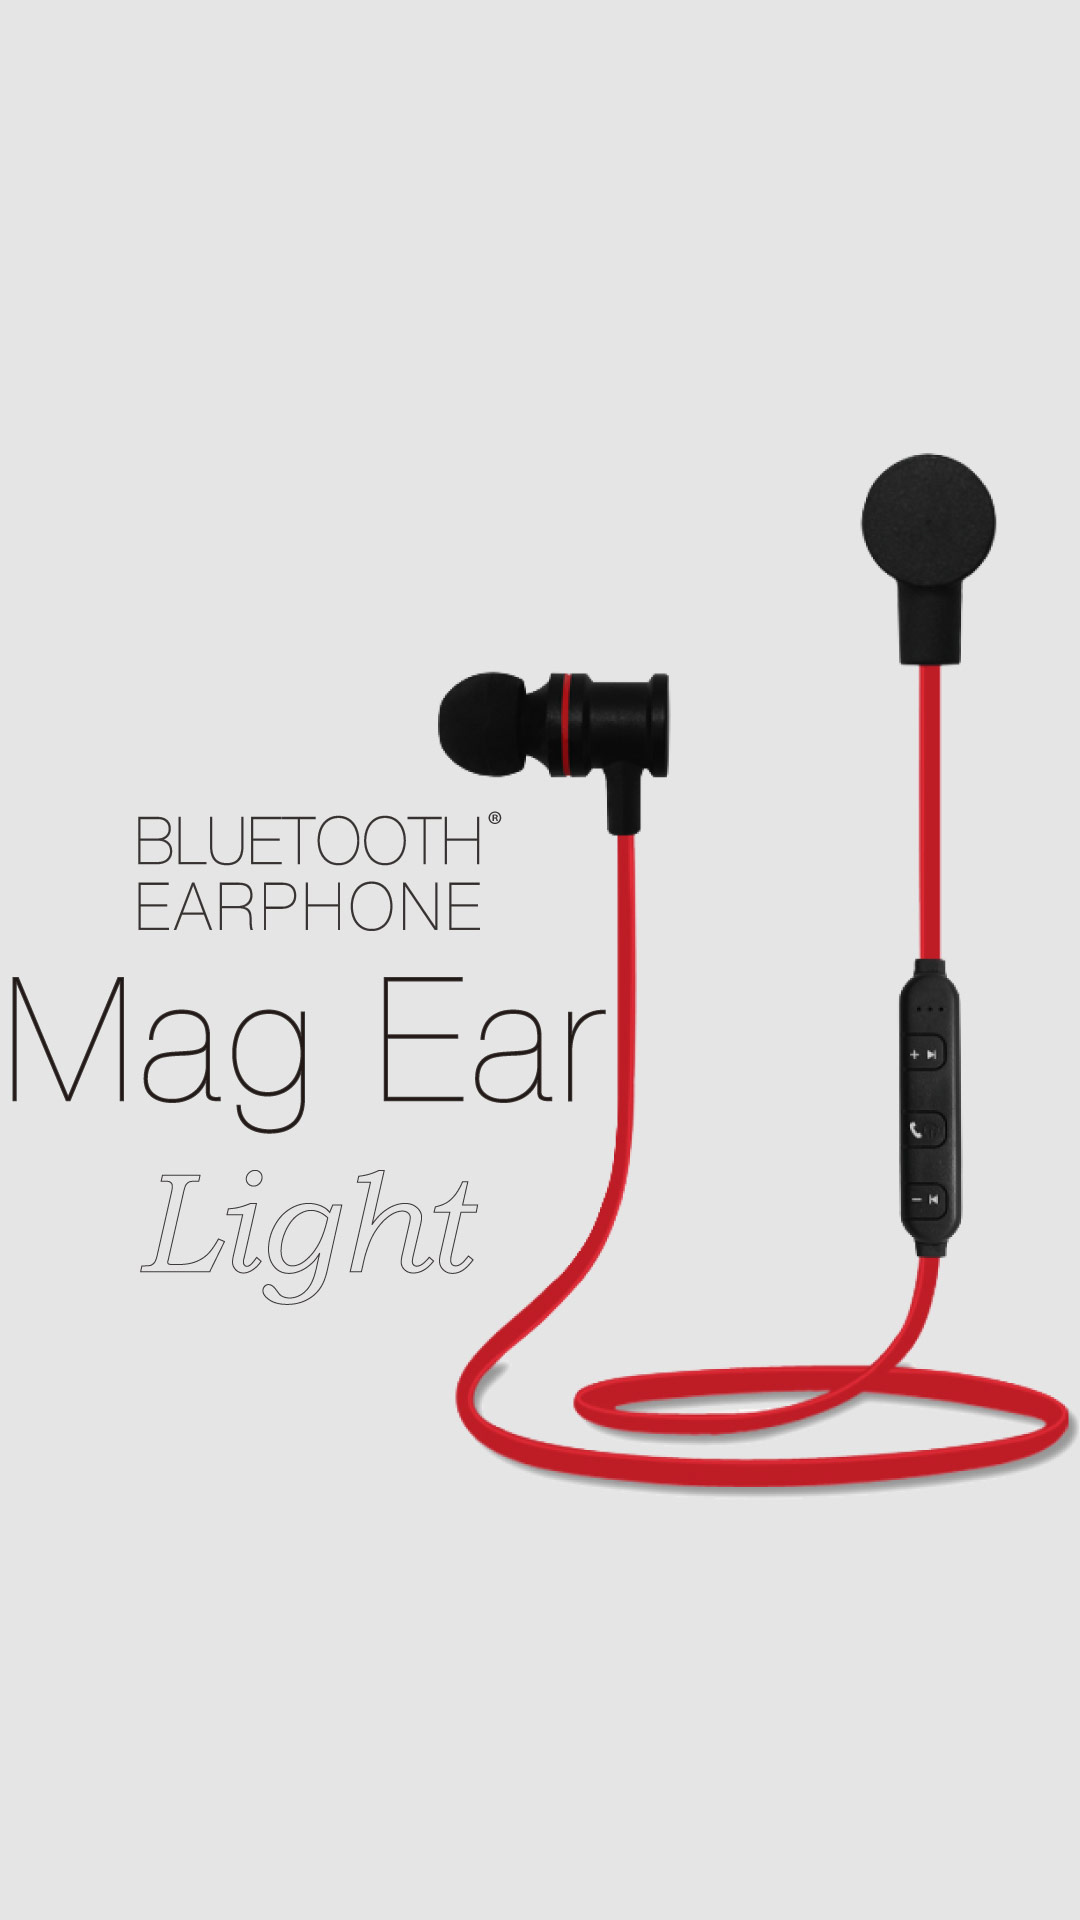 Bluetooth®イヤホン「Mag Ear Light」(本製品は生産終了しております)